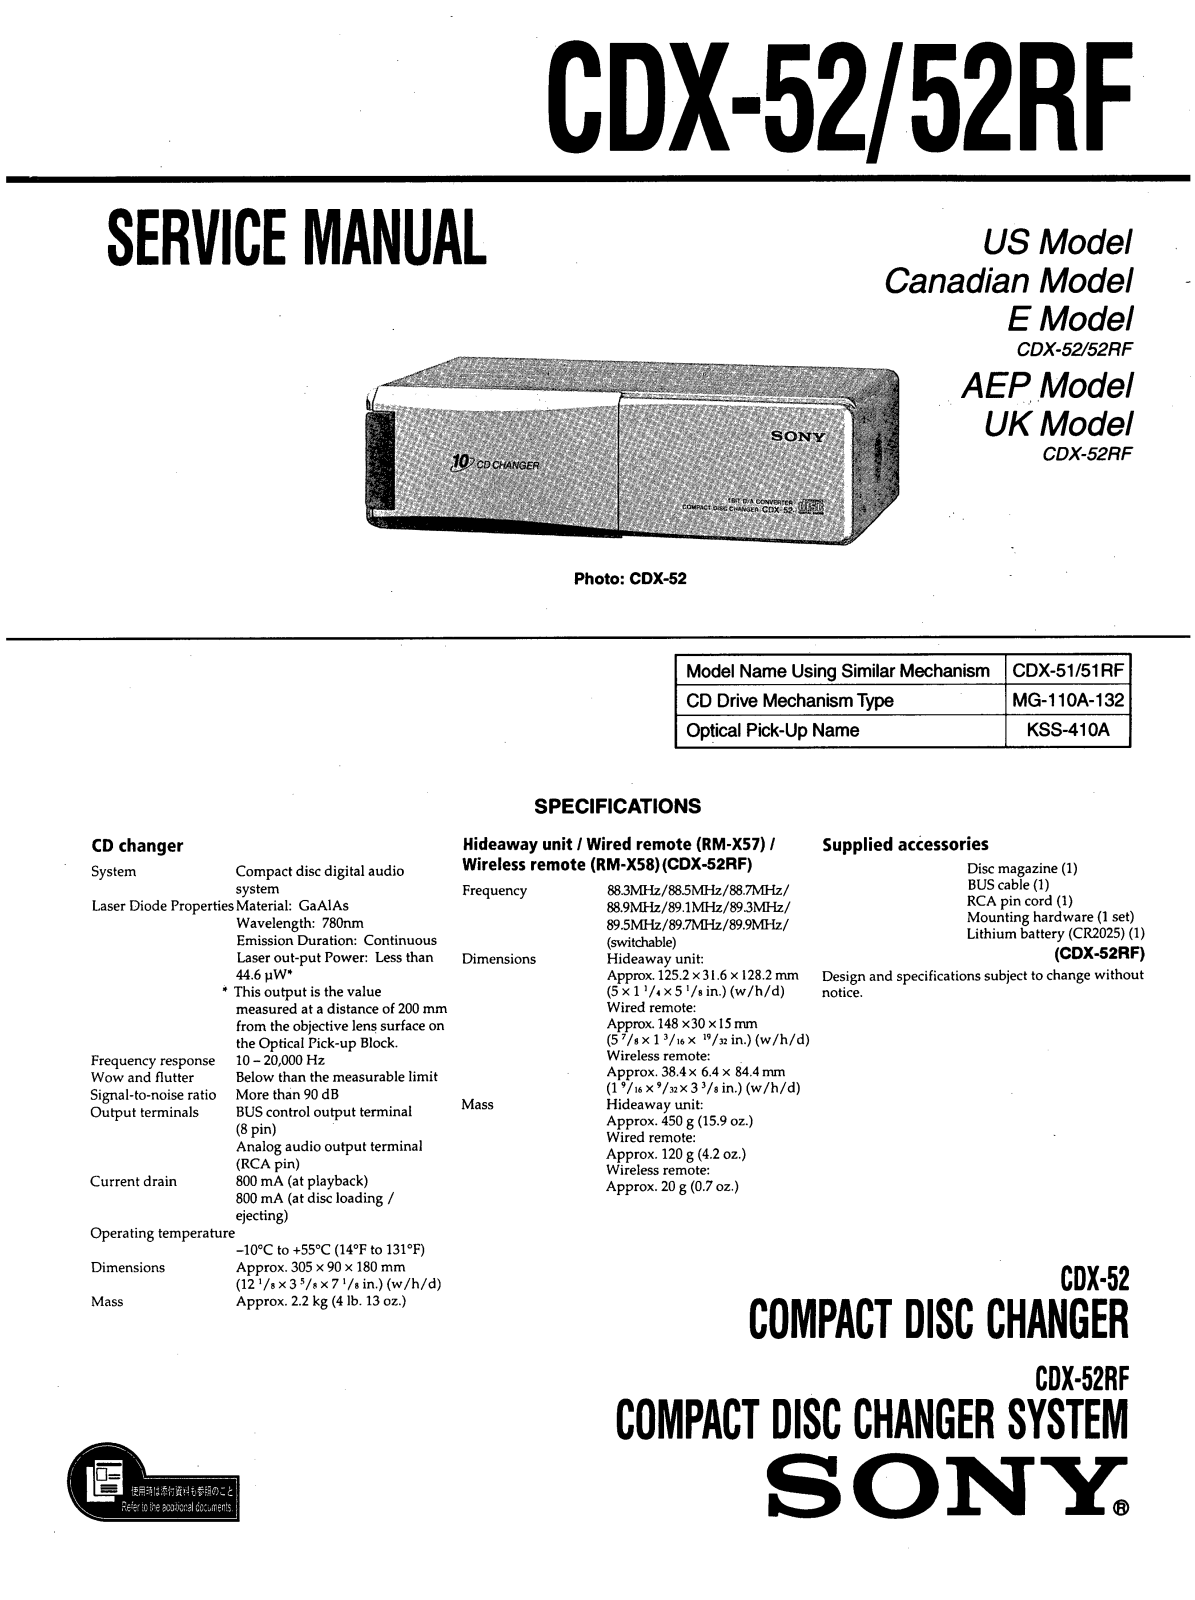 Sony CDX-52 Service manual